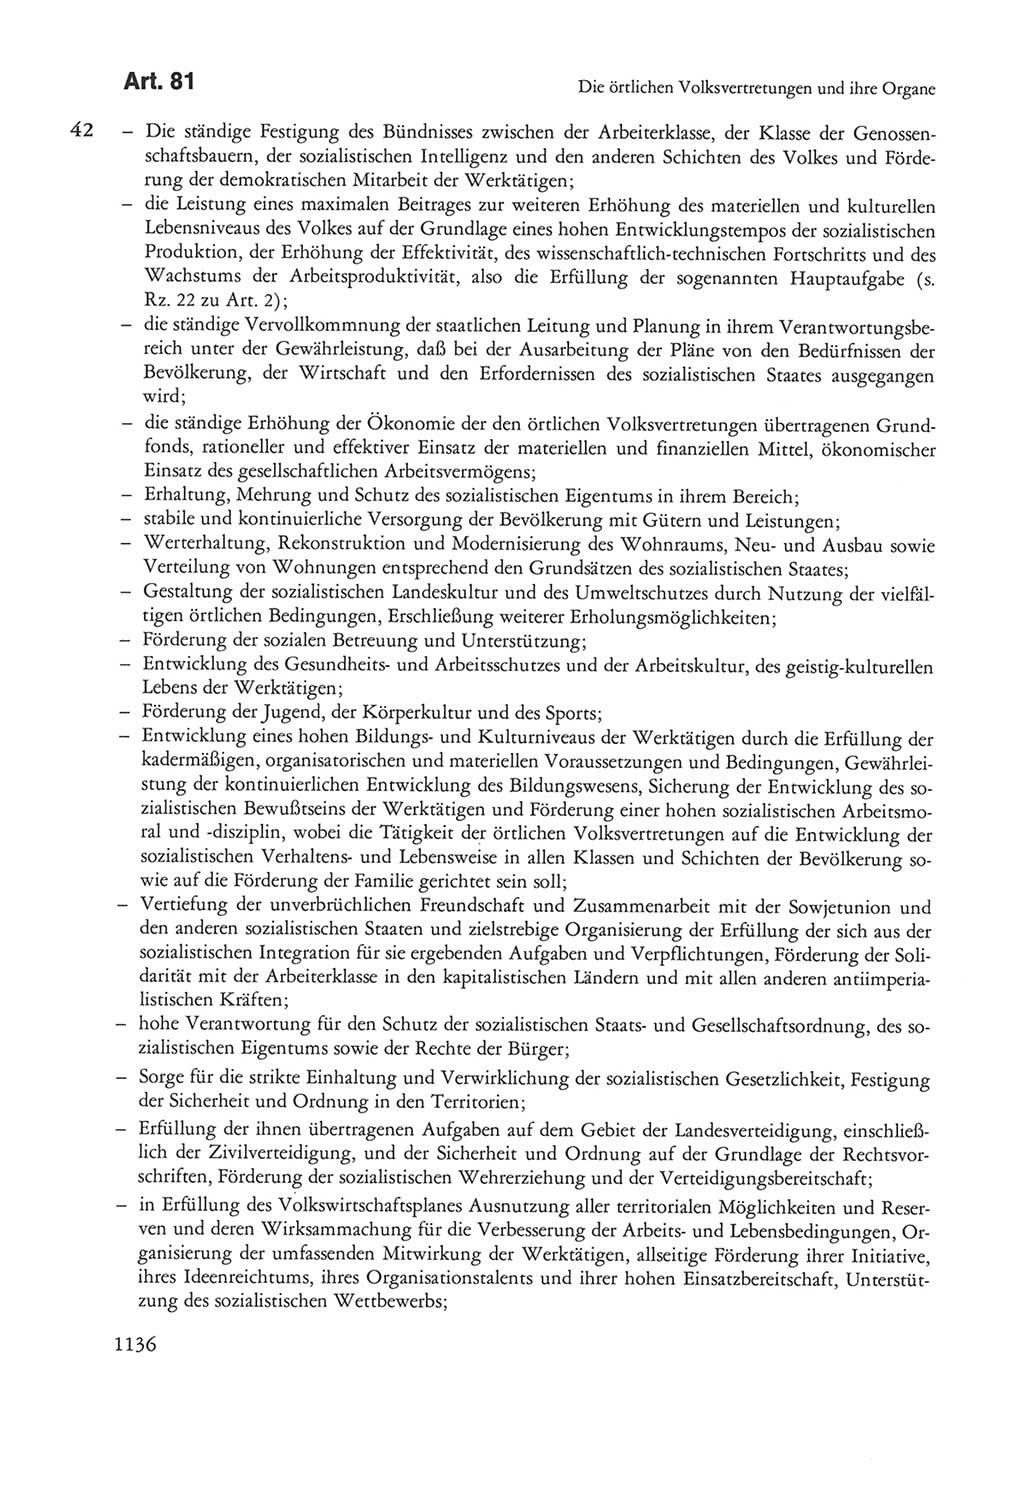 Die sozialistische Verfassung der Deutschen Demokratischen Republik (DDR), Kommentar mit einem Nachtrag 1997, Seite 1136 (Soz. Verf. DDR Komm. Nachtr. 1997, S. 1136)